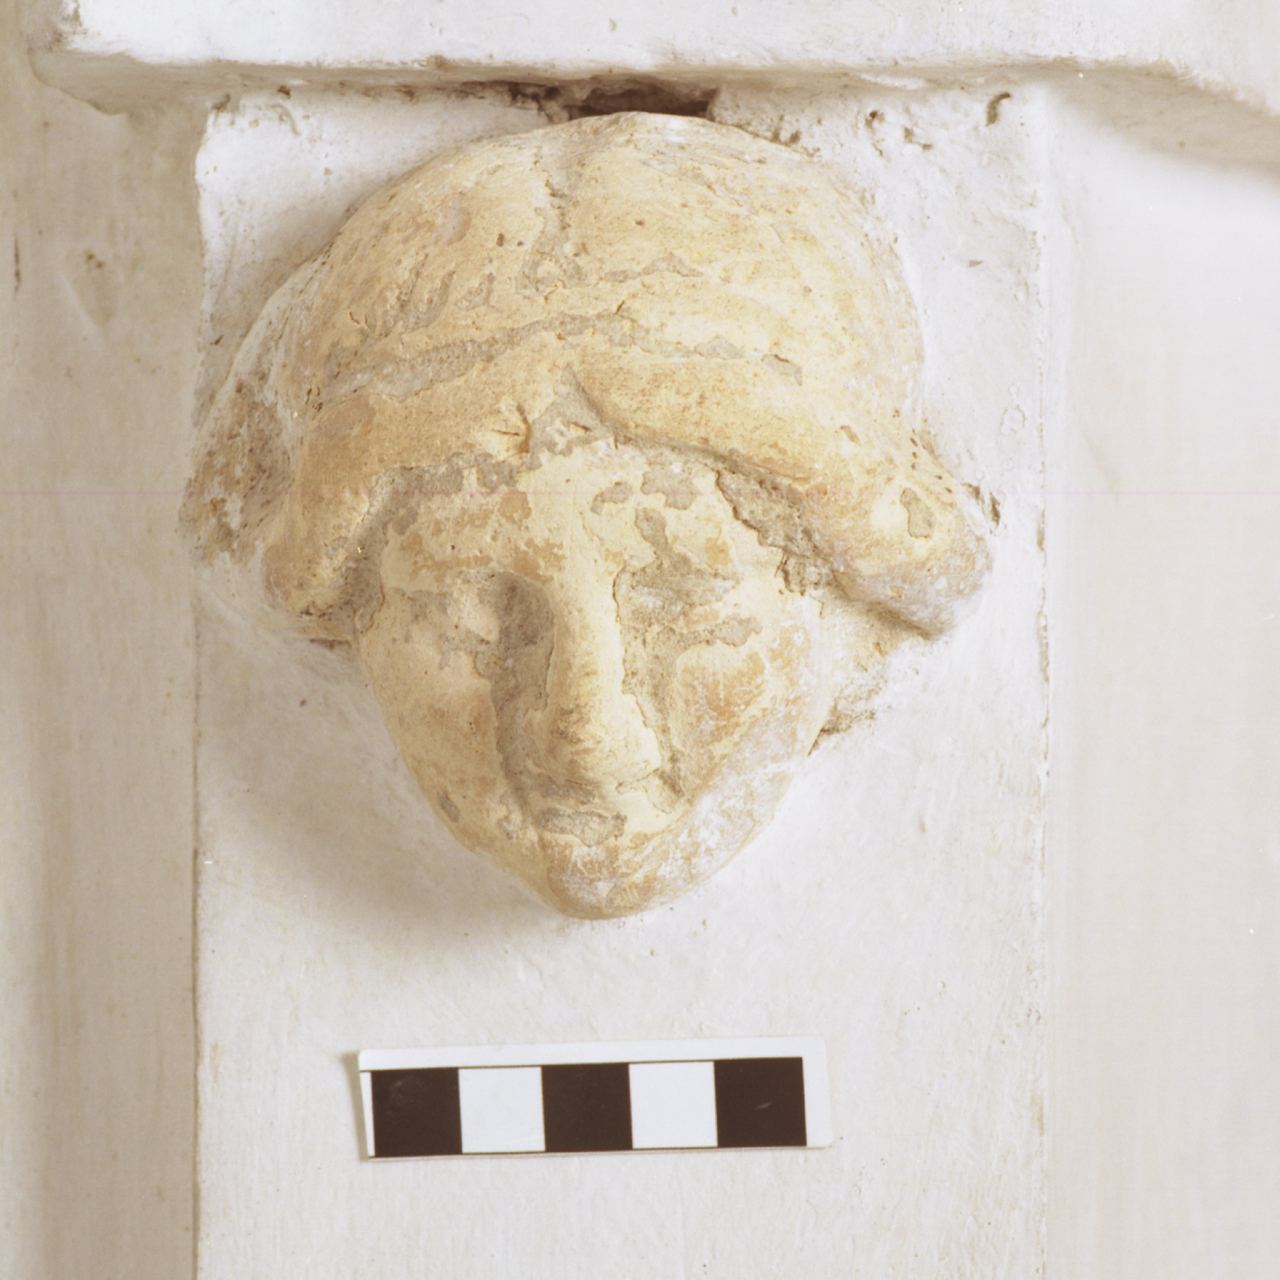 testa miniaturistica - età ellenistica (seconda metà sec. IV a.C)